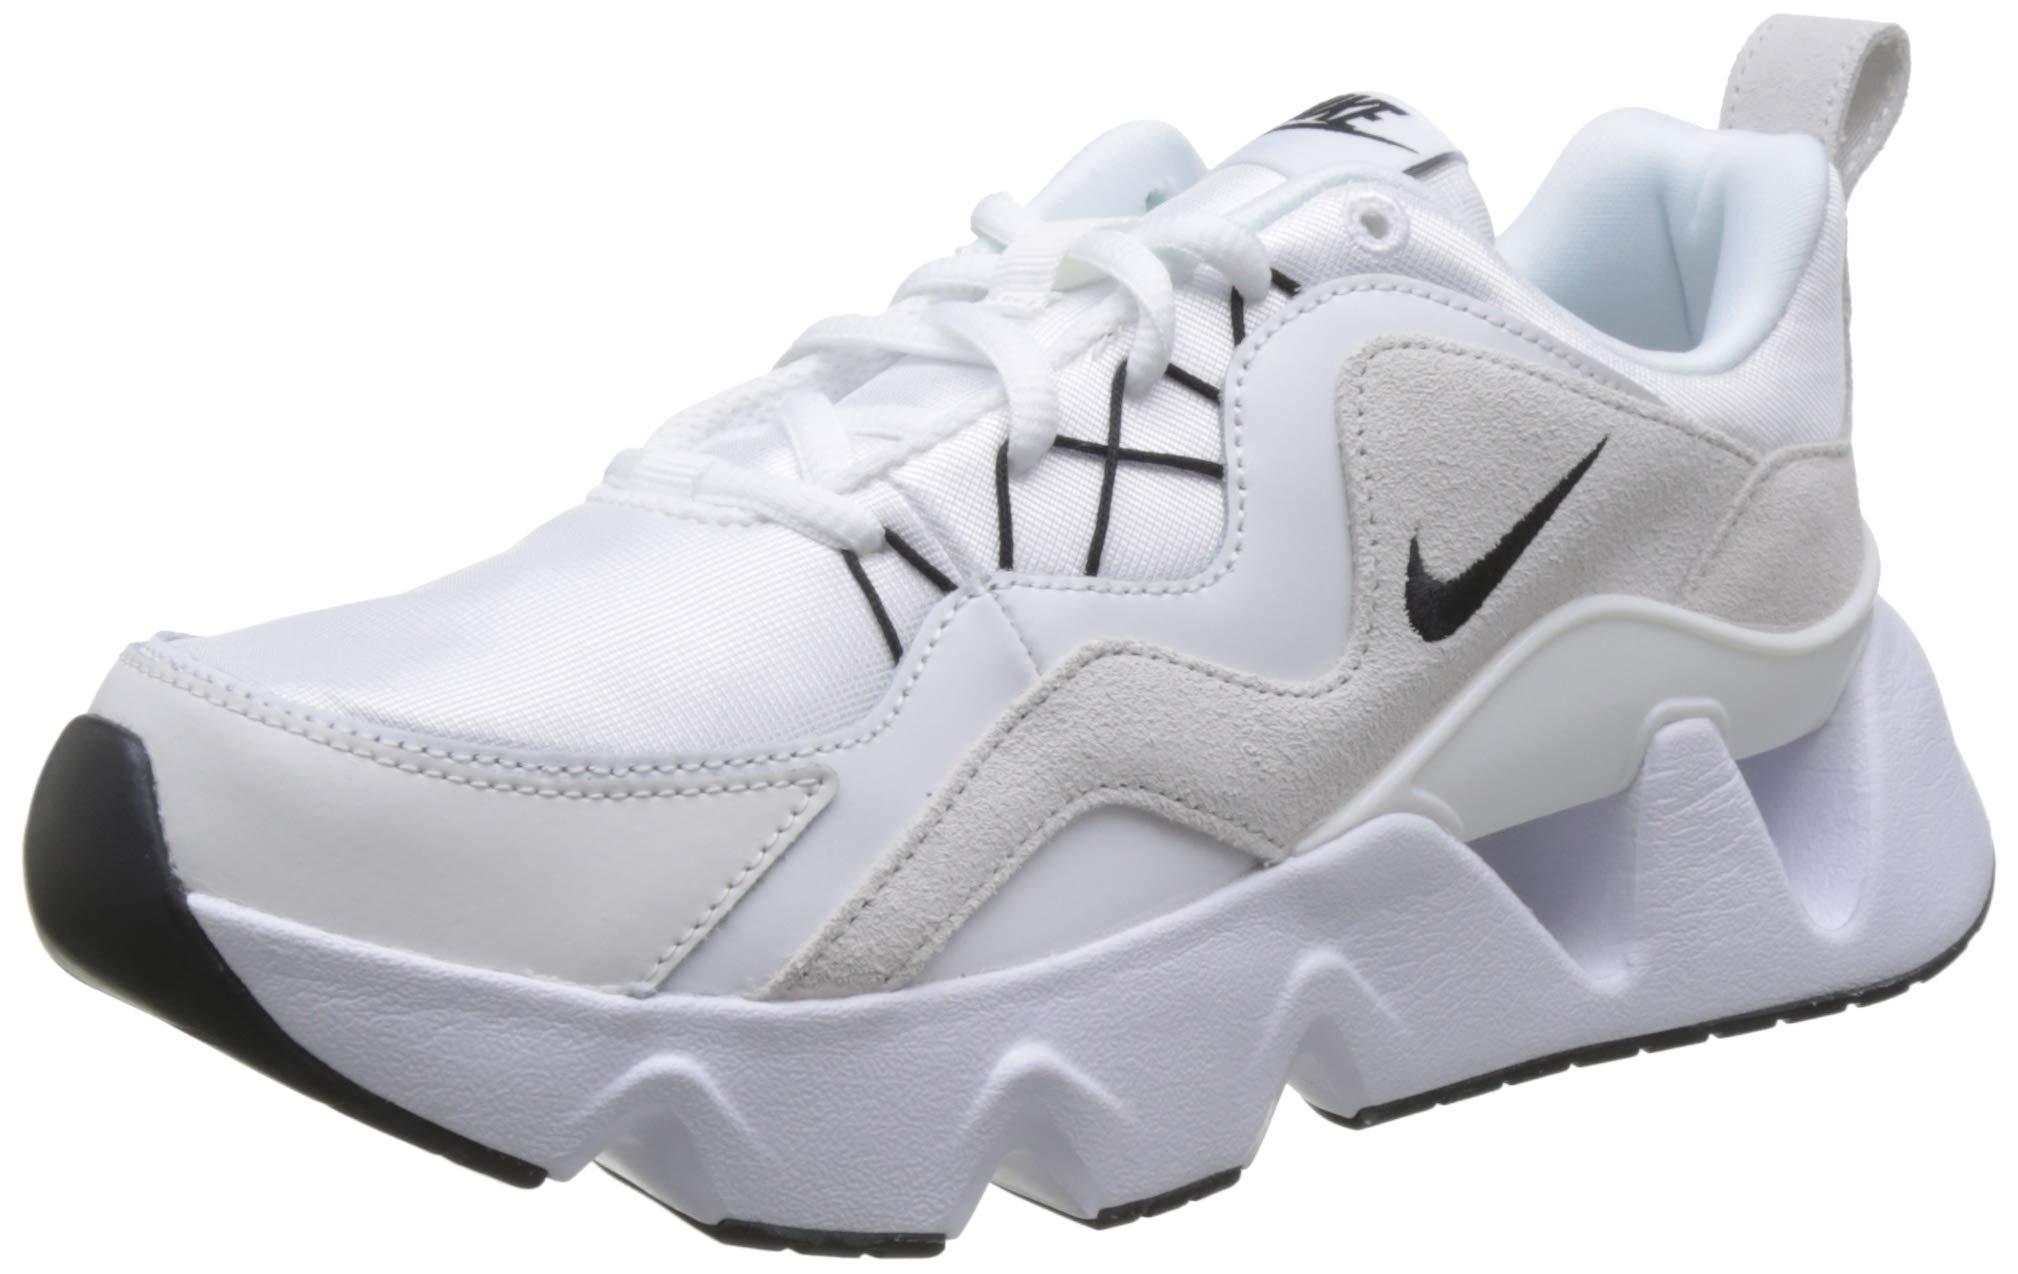 Chaussure RYZ 365 pour Synthétique Nike en coloris Blanc | Lyst